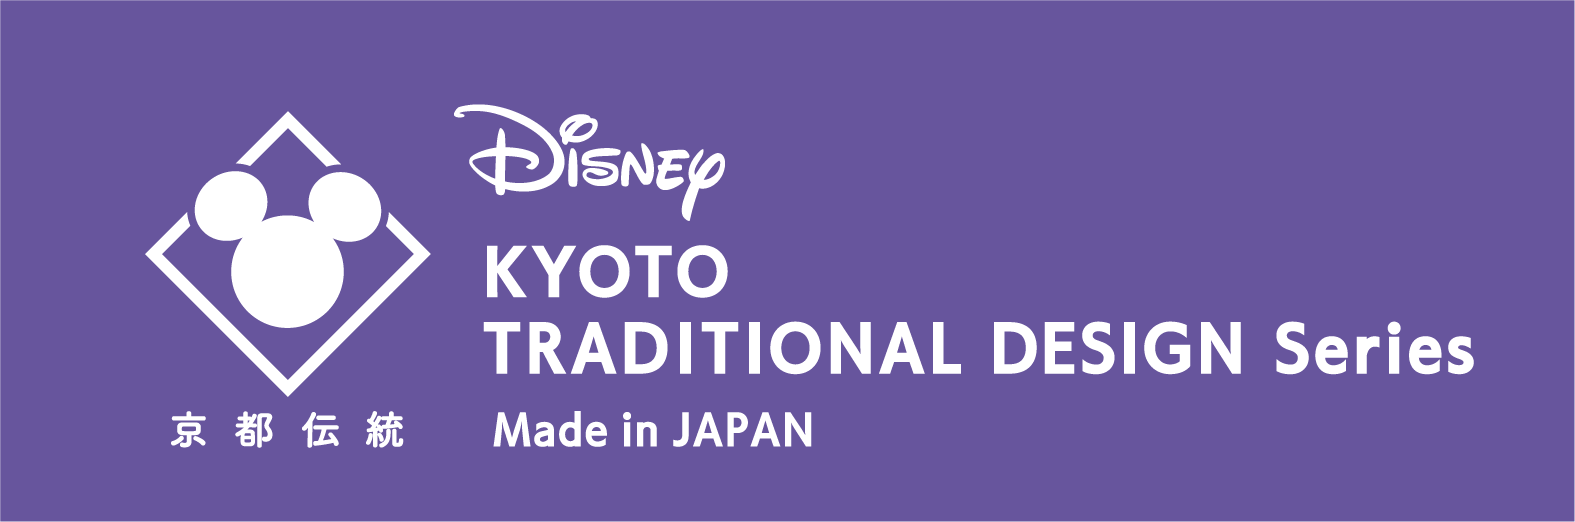 ディズニー 京都伝統工芸シリーズ 展示会 開催 京都市のプレスリリース